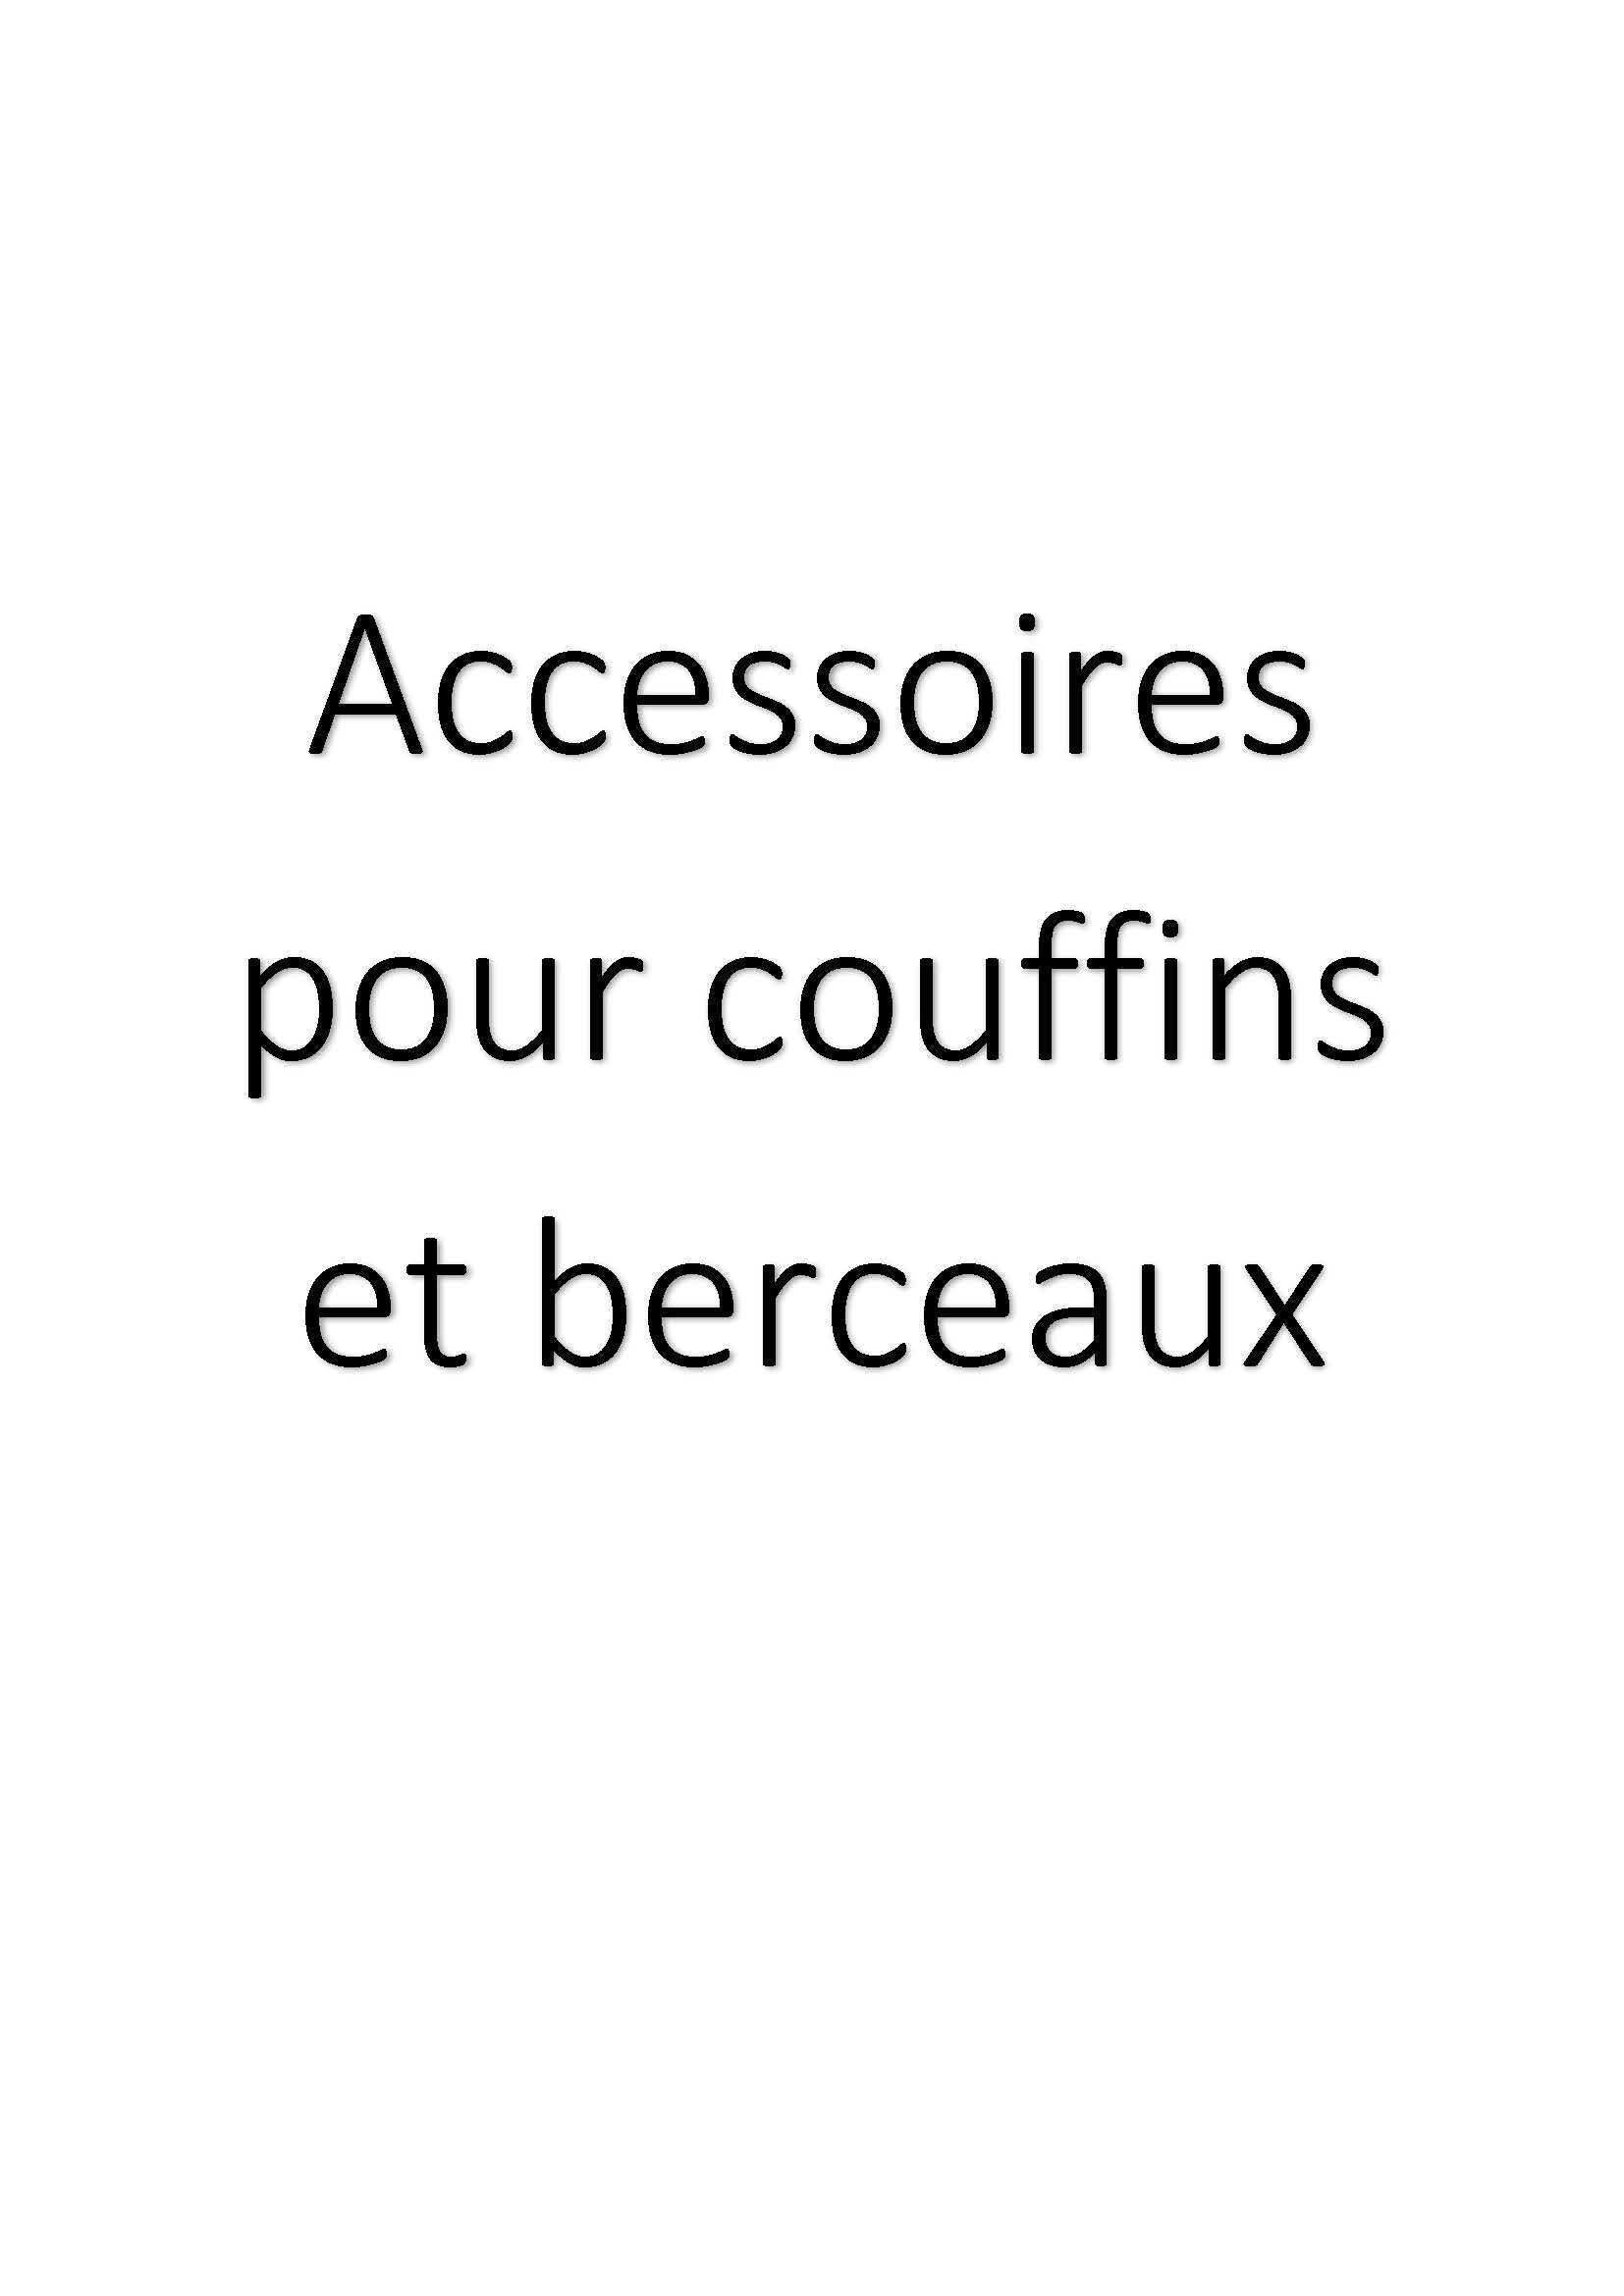 Accessoires pour couffins et berceaux clicktofournisseur.com